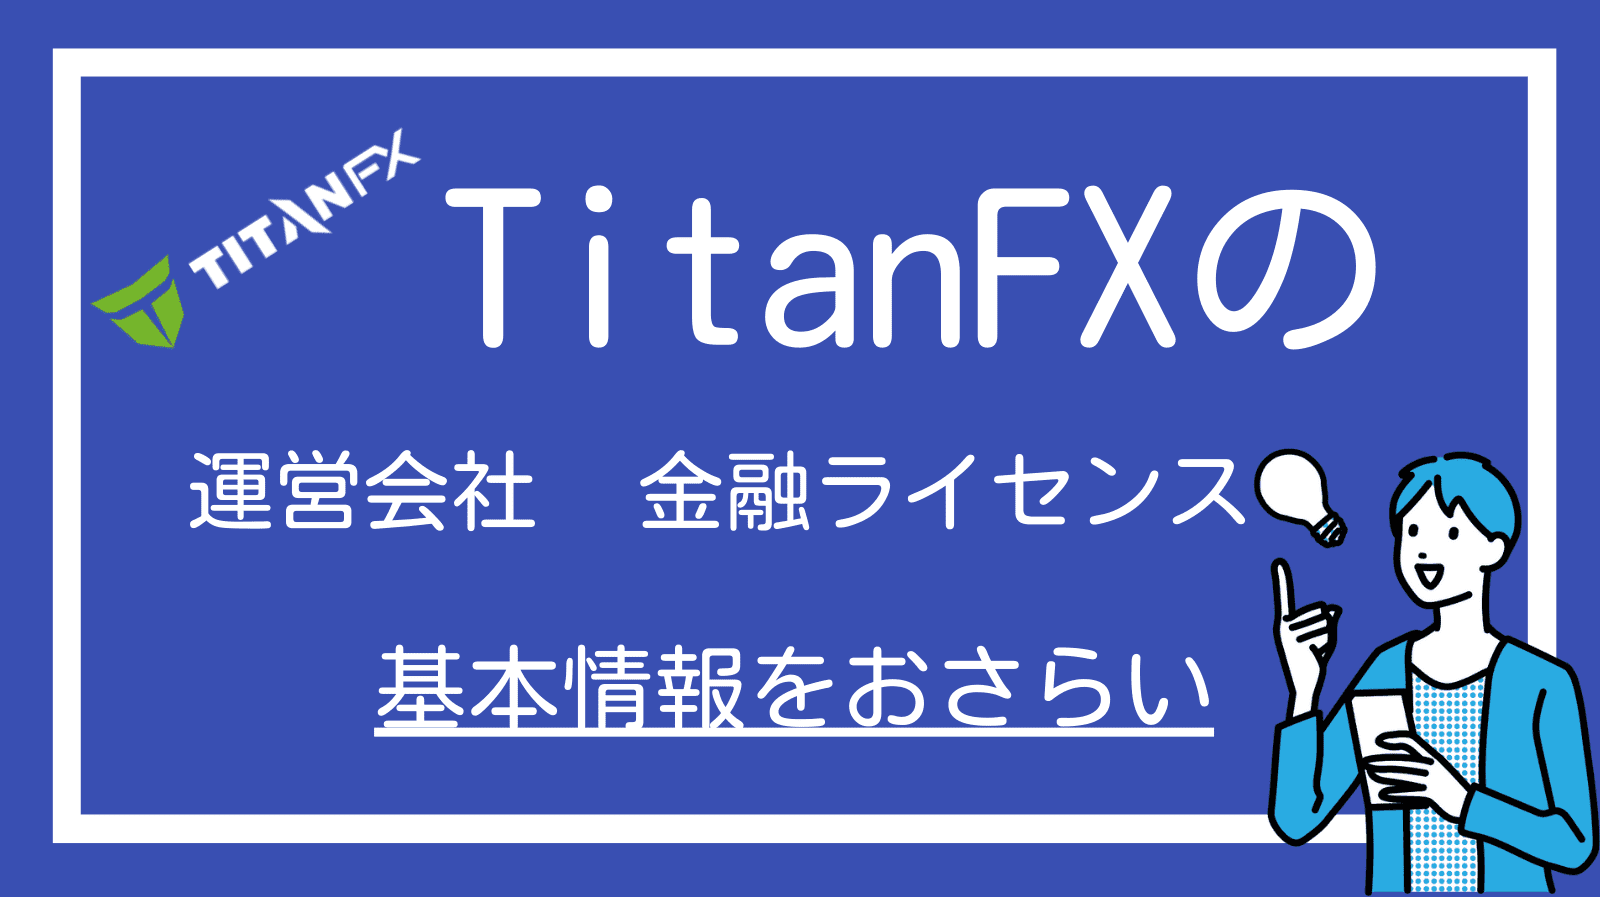 TitanFXの運営会社や金融ライセンスについての章